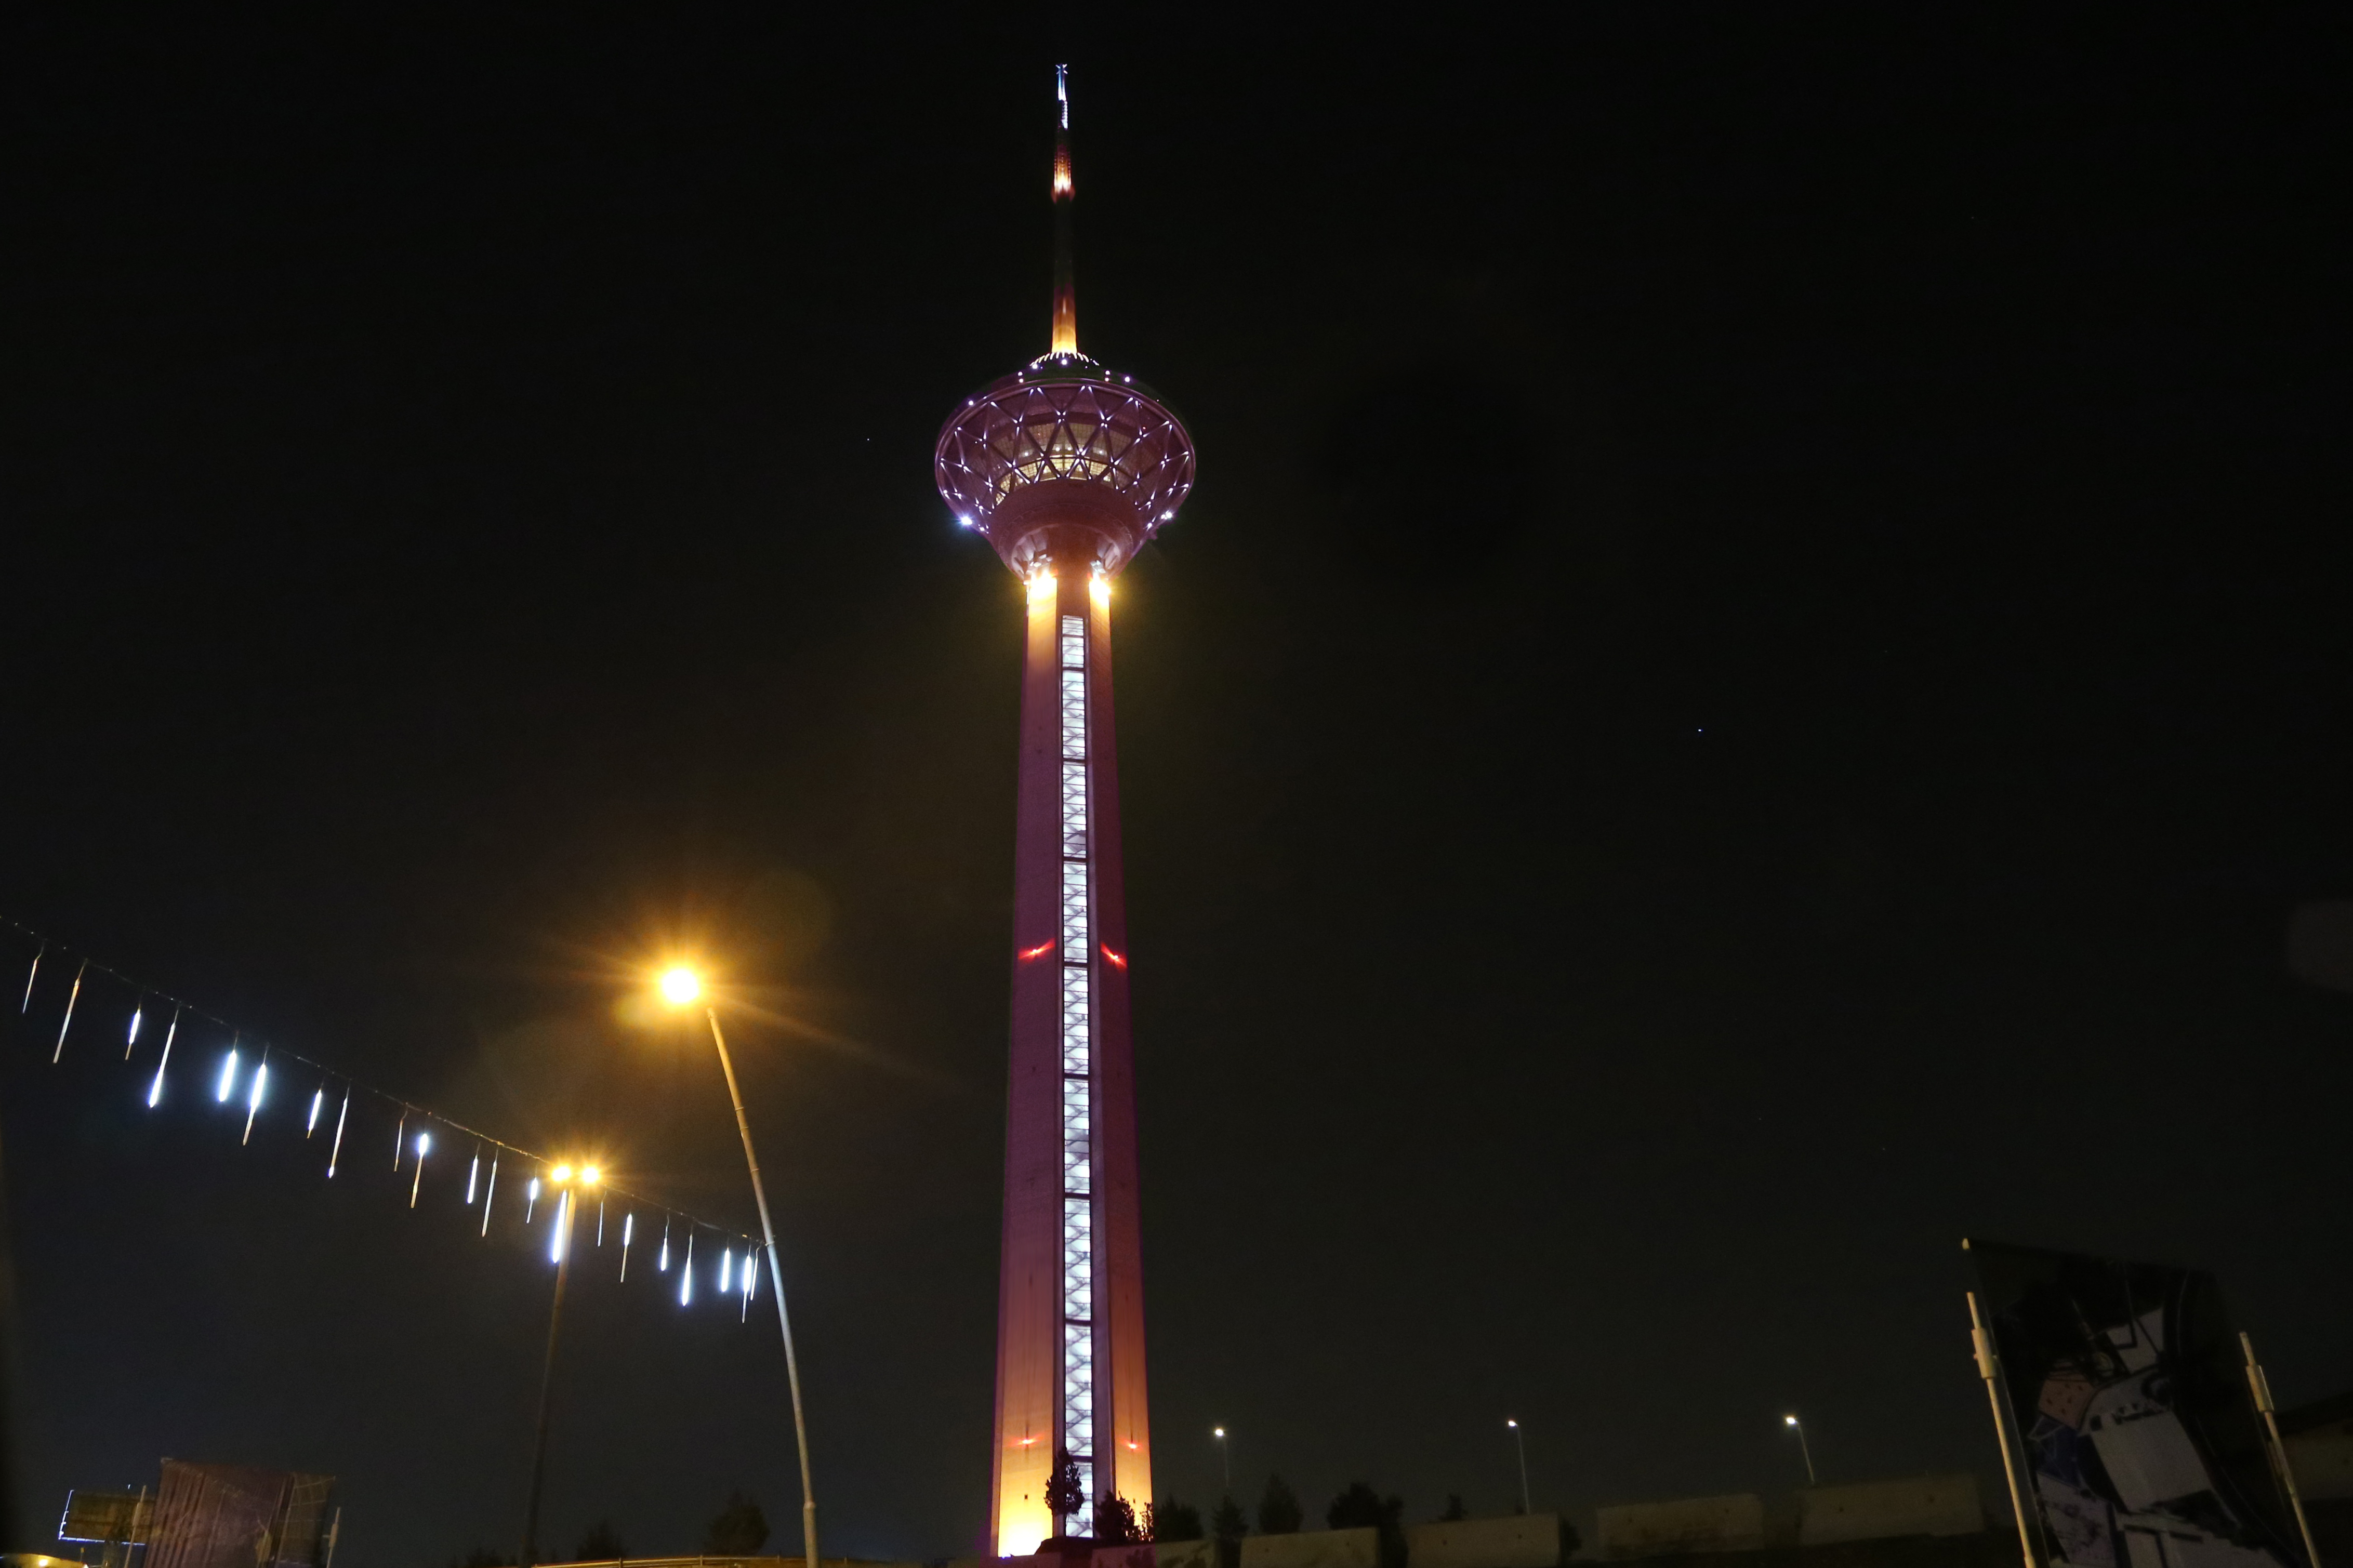 برج آزادی و میلاد نارنجی شدند و به کمپین محک پیوستند